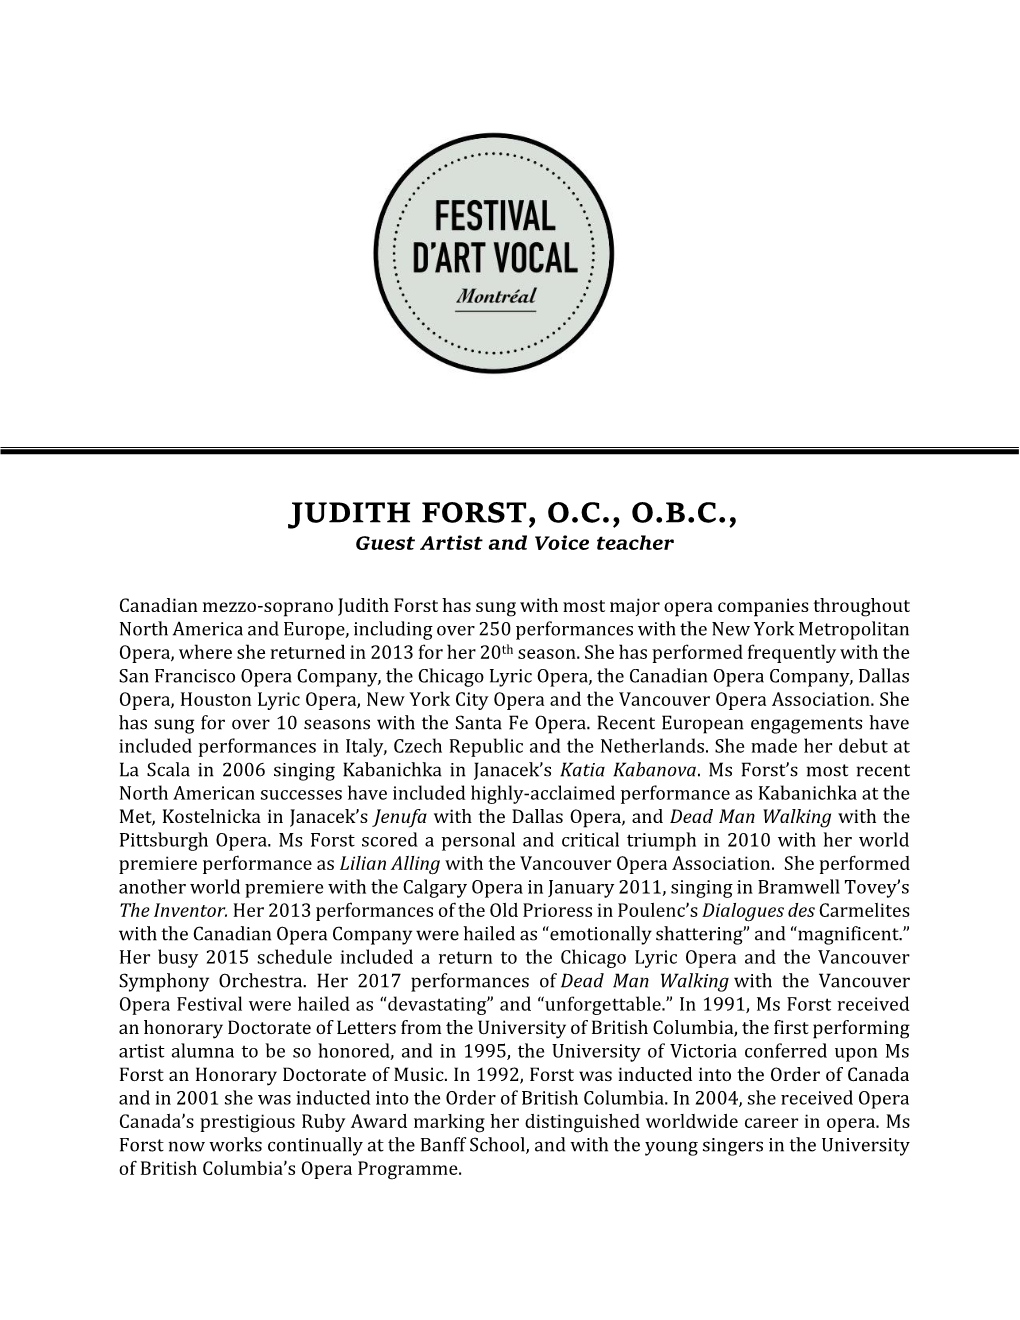 JUDITH FORST, O.C., O.B.C., Guest Artist and Voice Teacher